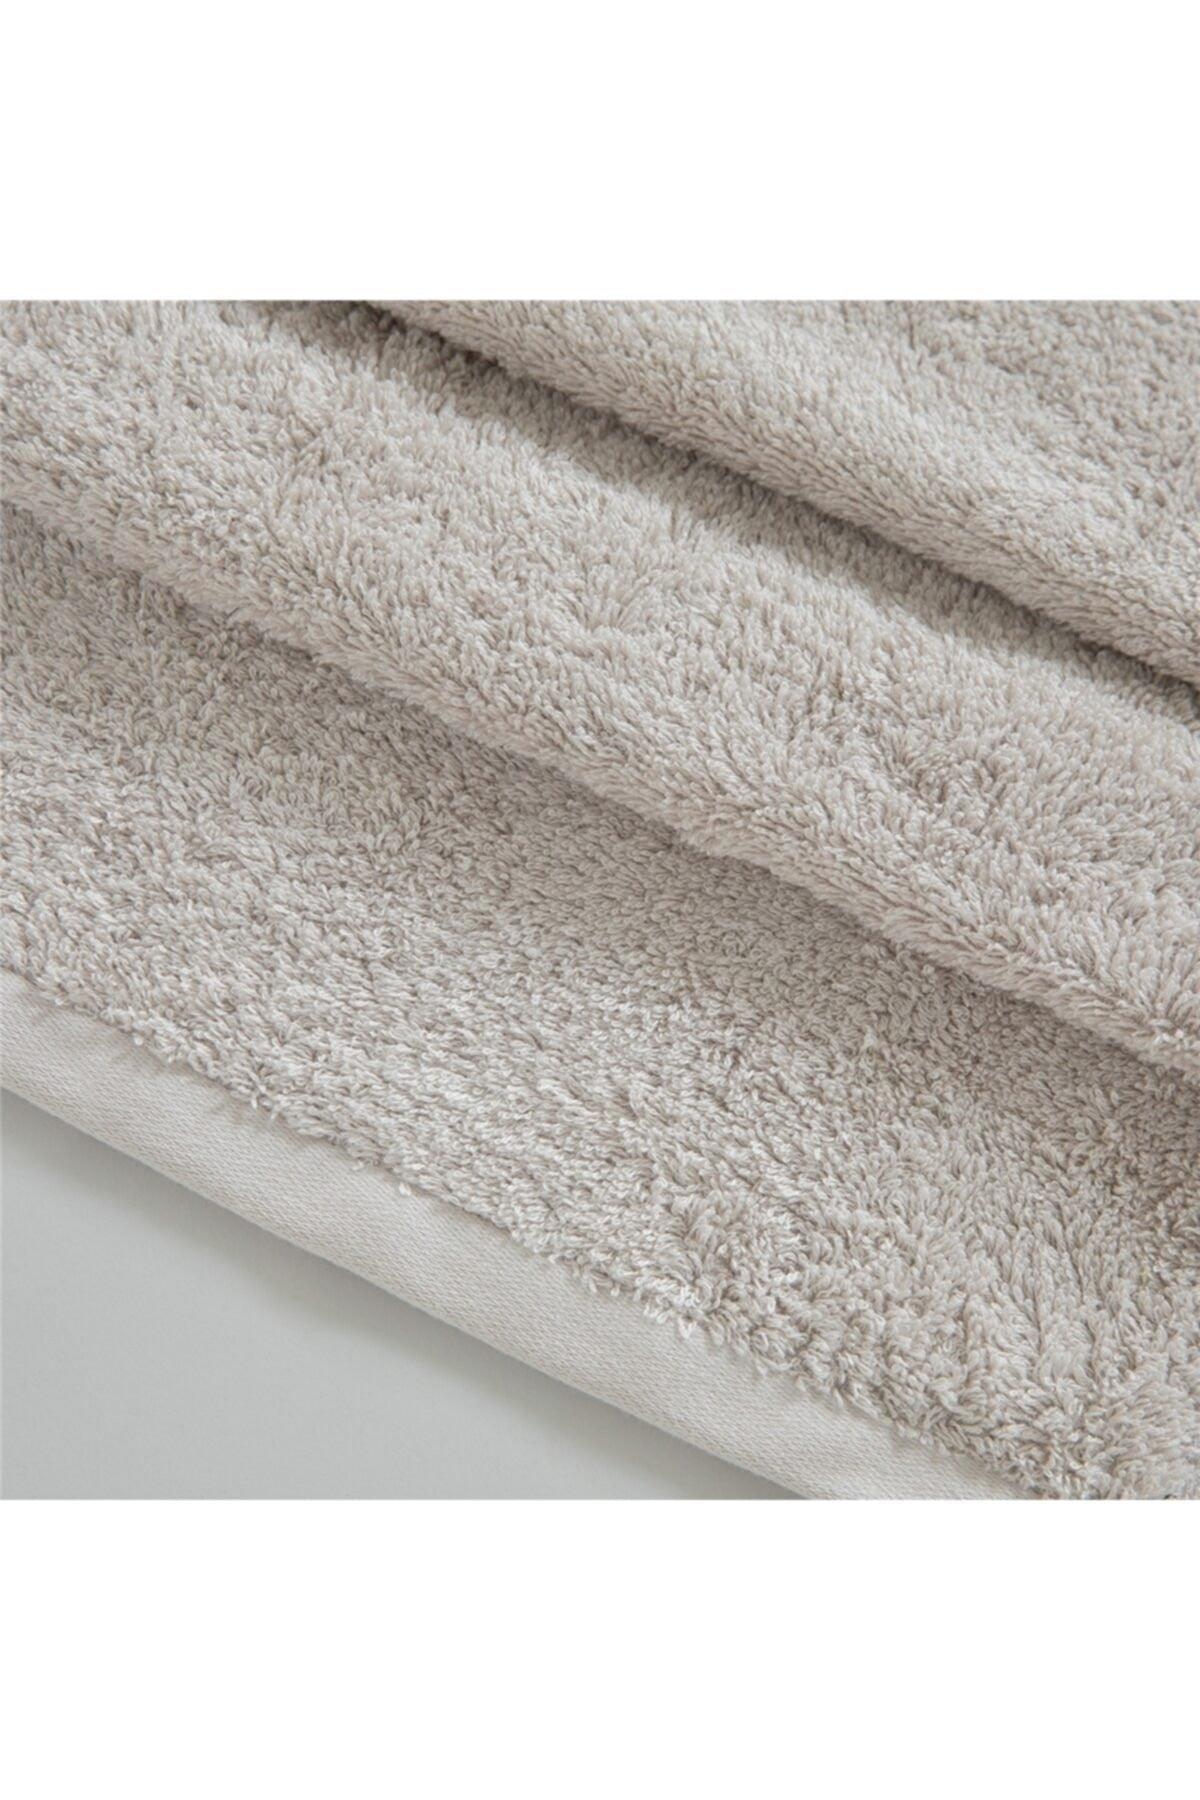 Solid Hand Towel 30x50 Cm Sand Beige - Swordslife